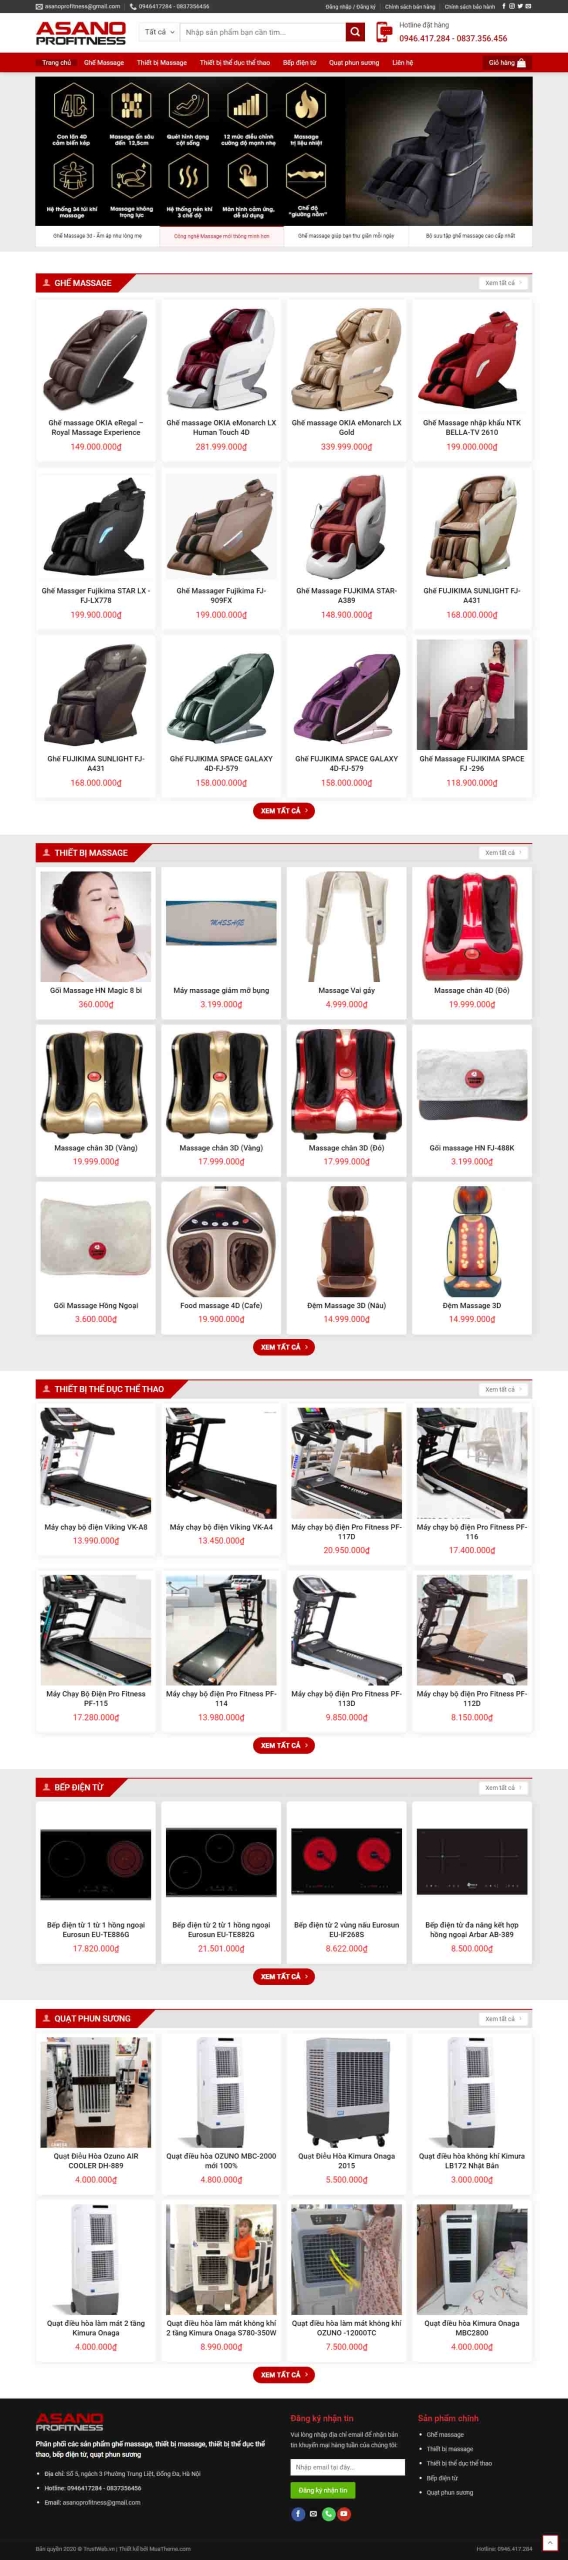 Mẫu giao diện thiết kế website bán hàng ghế massage